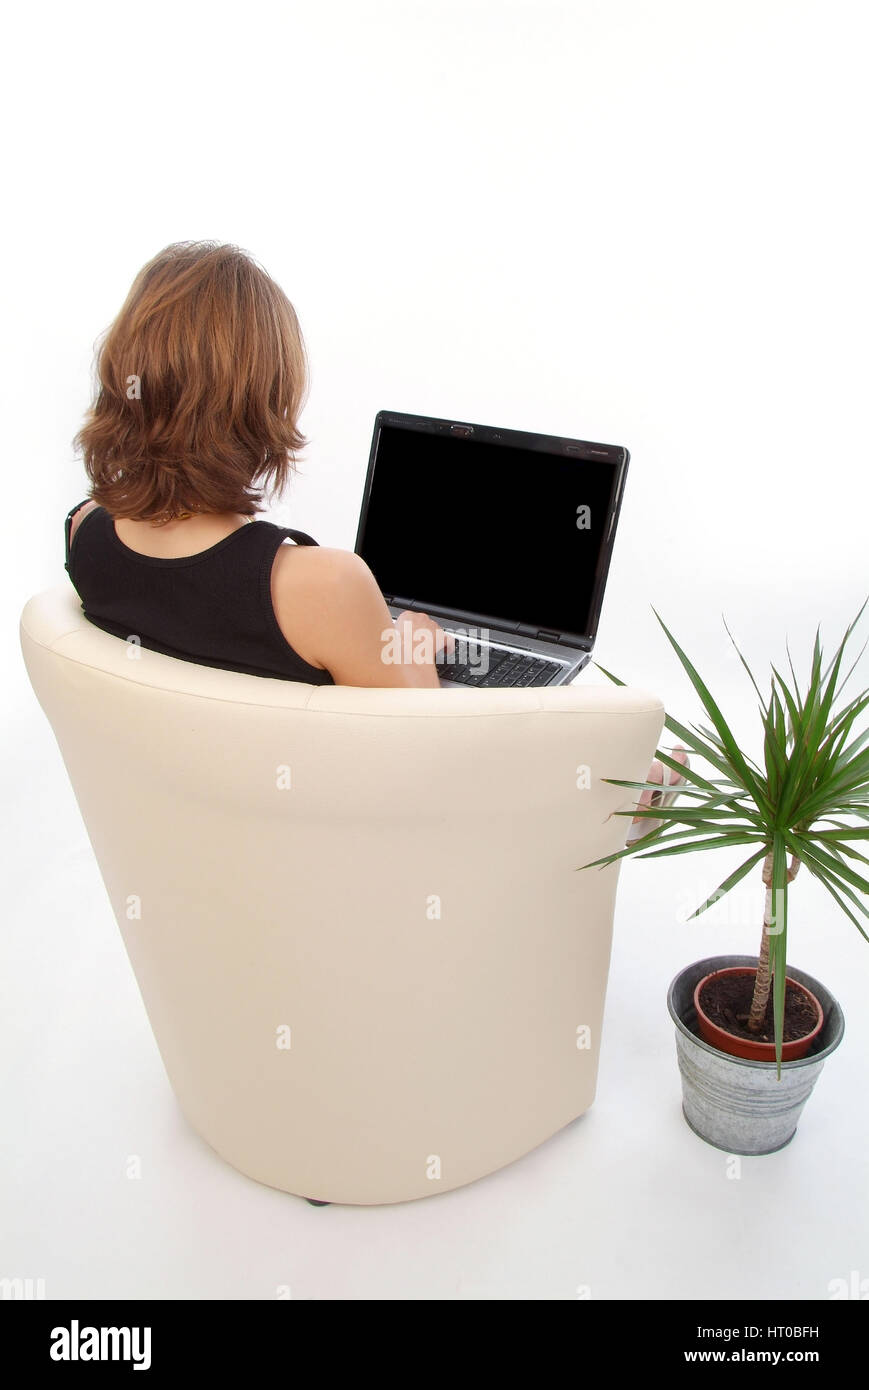 Junge Frau sitzt und arbeitet im Lederstuhl suis coffre - woman using laptop Banque D'Images